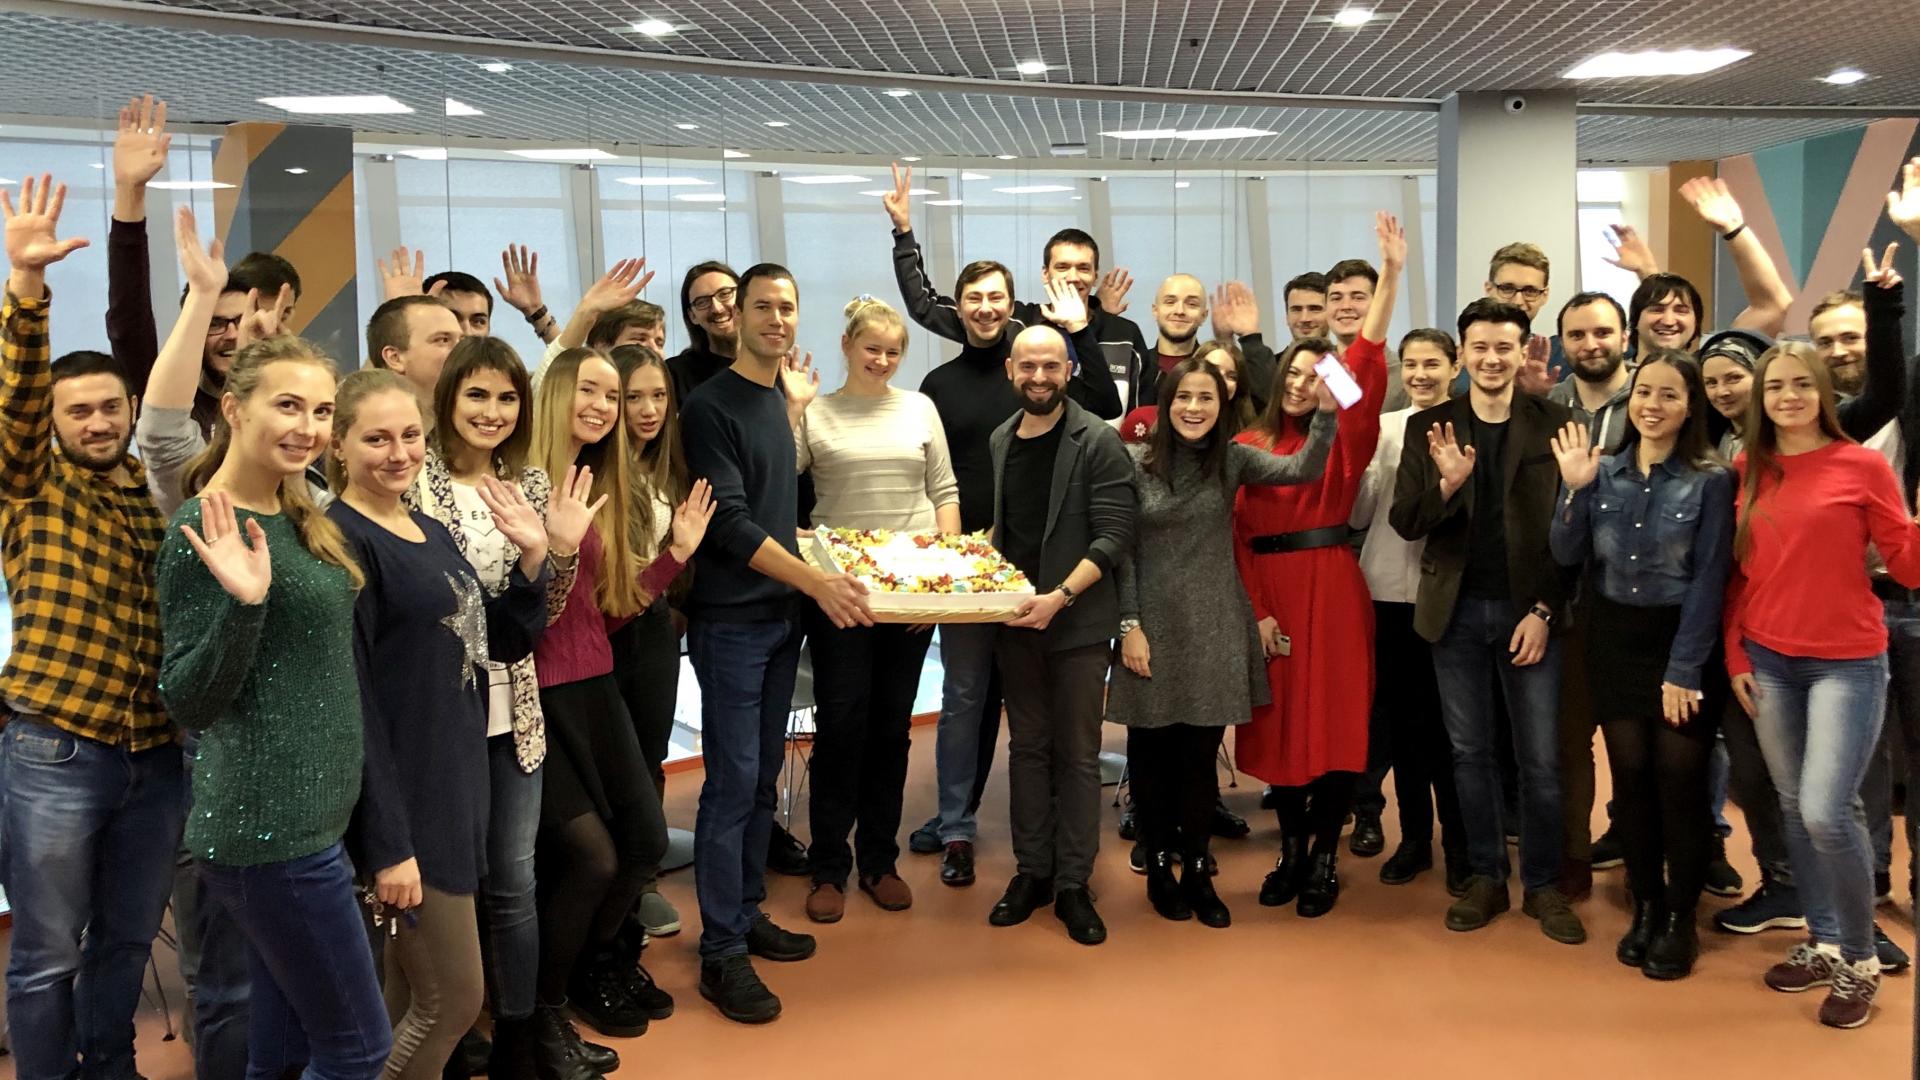 Milestone celebration of 100 employees in Easybrain Minsk office